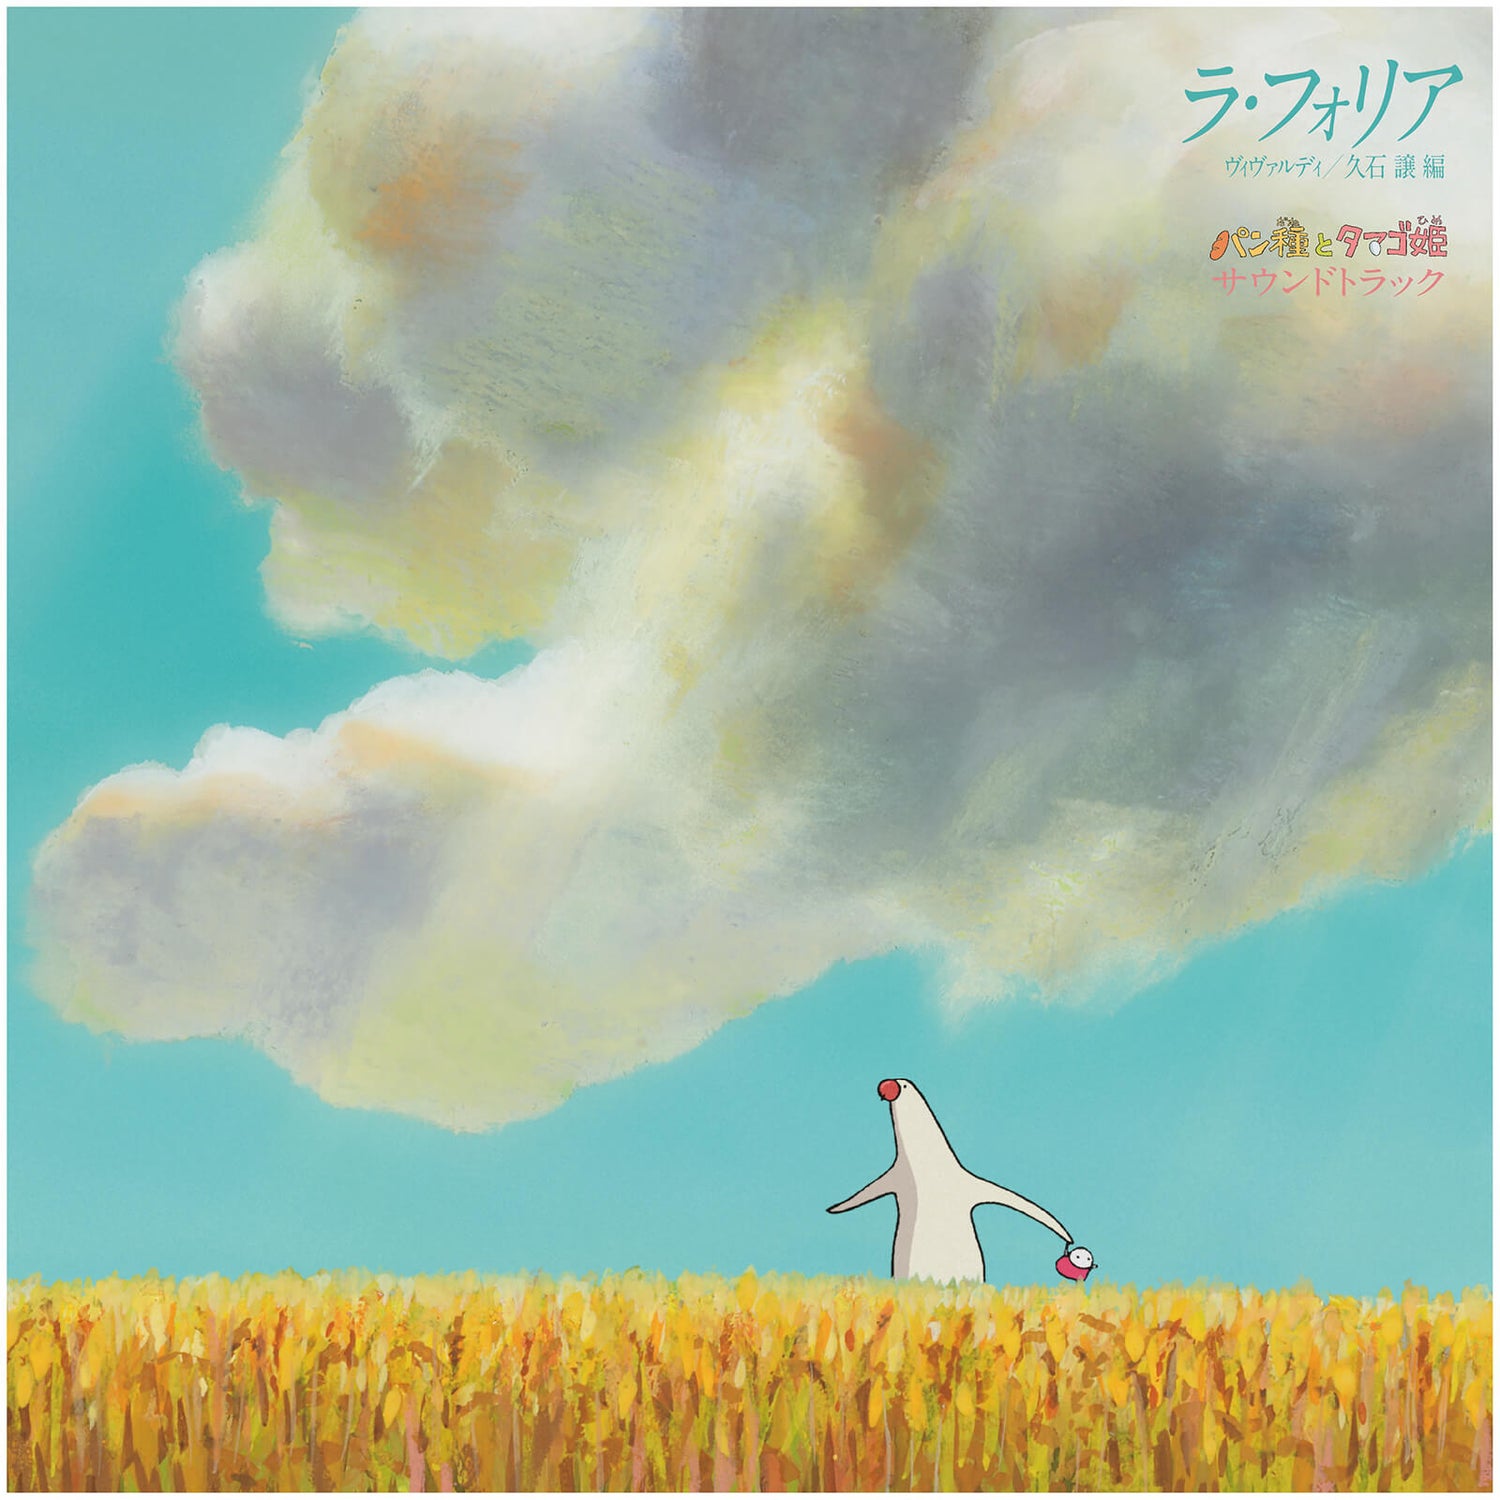 Studio Ghibli La Folia Vivaldi "Pantai to Tamago Hime" Soundtrack Vinyl